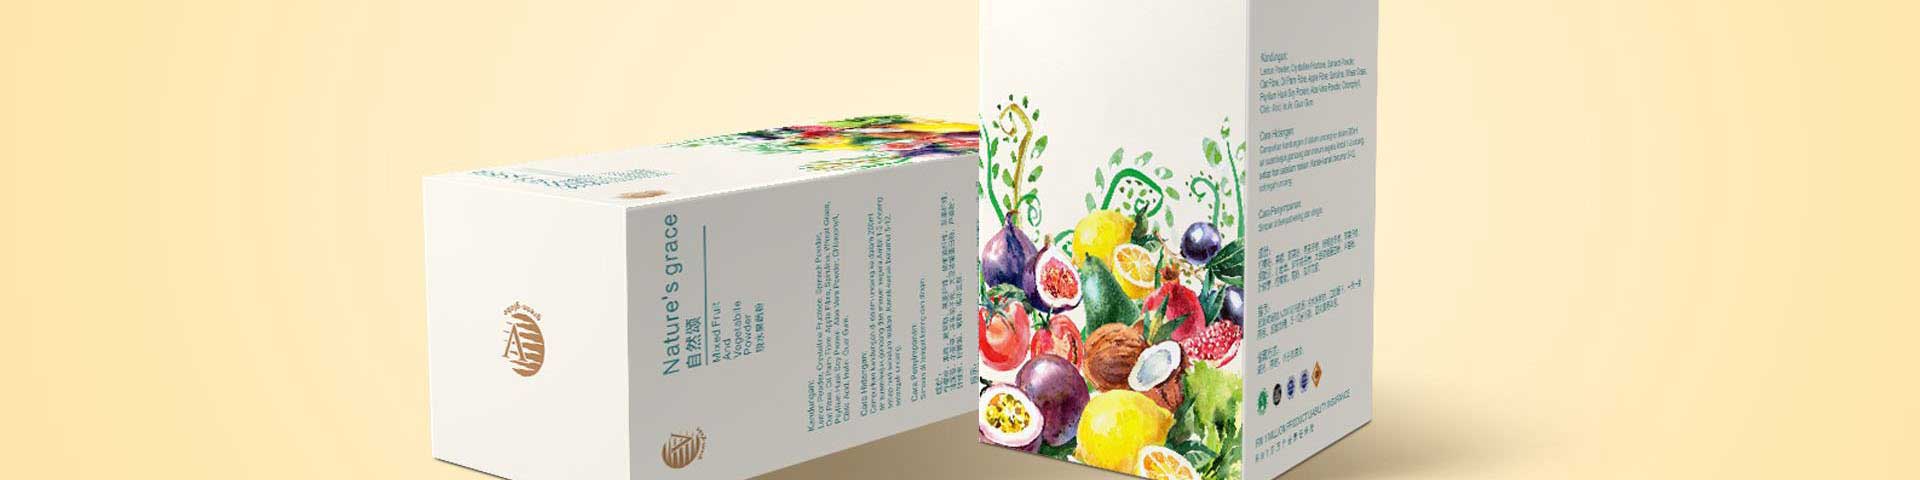 广州印刷包装服务公司帮助企业供应加工画册、礼品盒、食品包装、彩色印刷、印刷厂报价等业务，以包装产品